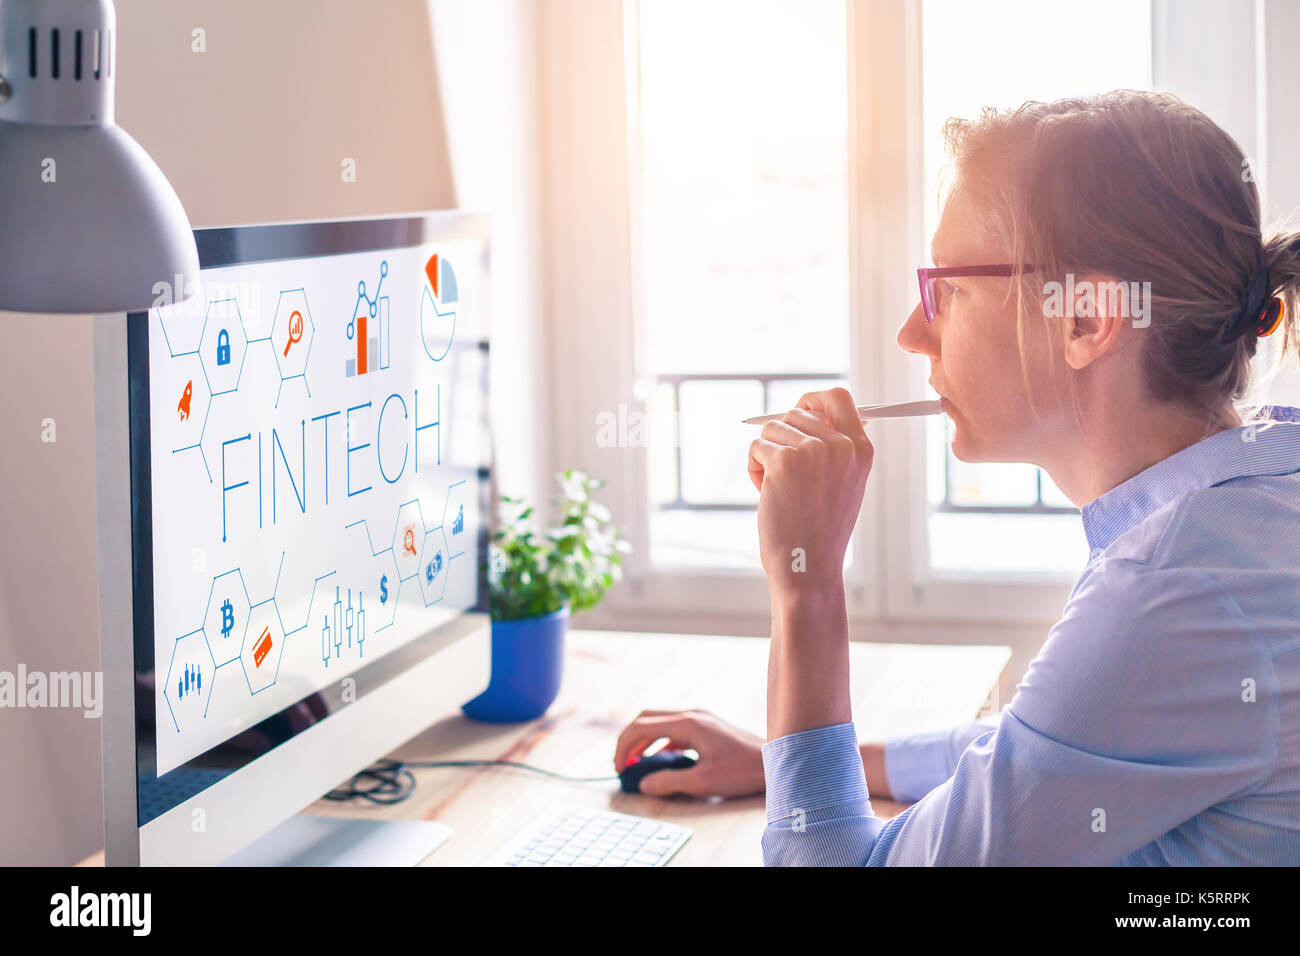 Fintech concept sur l'écran de l'ordinateur avec une interface moderne et novatrice de graphiques, femme d'affaires au bureau Banque D'Images